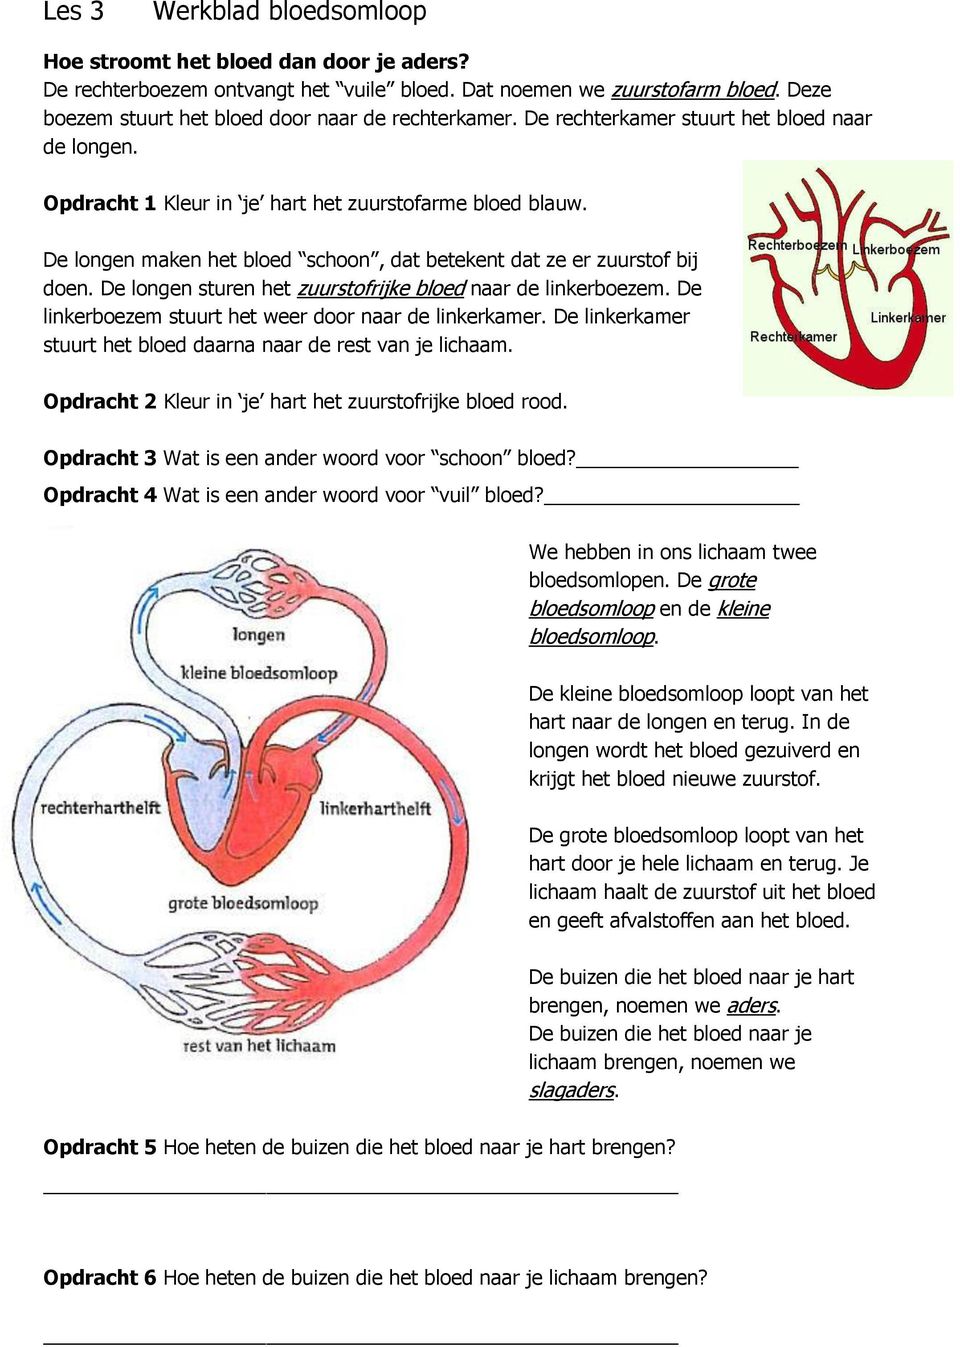 De longen sturen het zuurstofrijke bloed naar de linkerboezem. De linkerboezem stuurt het weer door naar de linkerkamer. De linkerkamer stuurt het bloed daarna naar de rest van je lichaam.